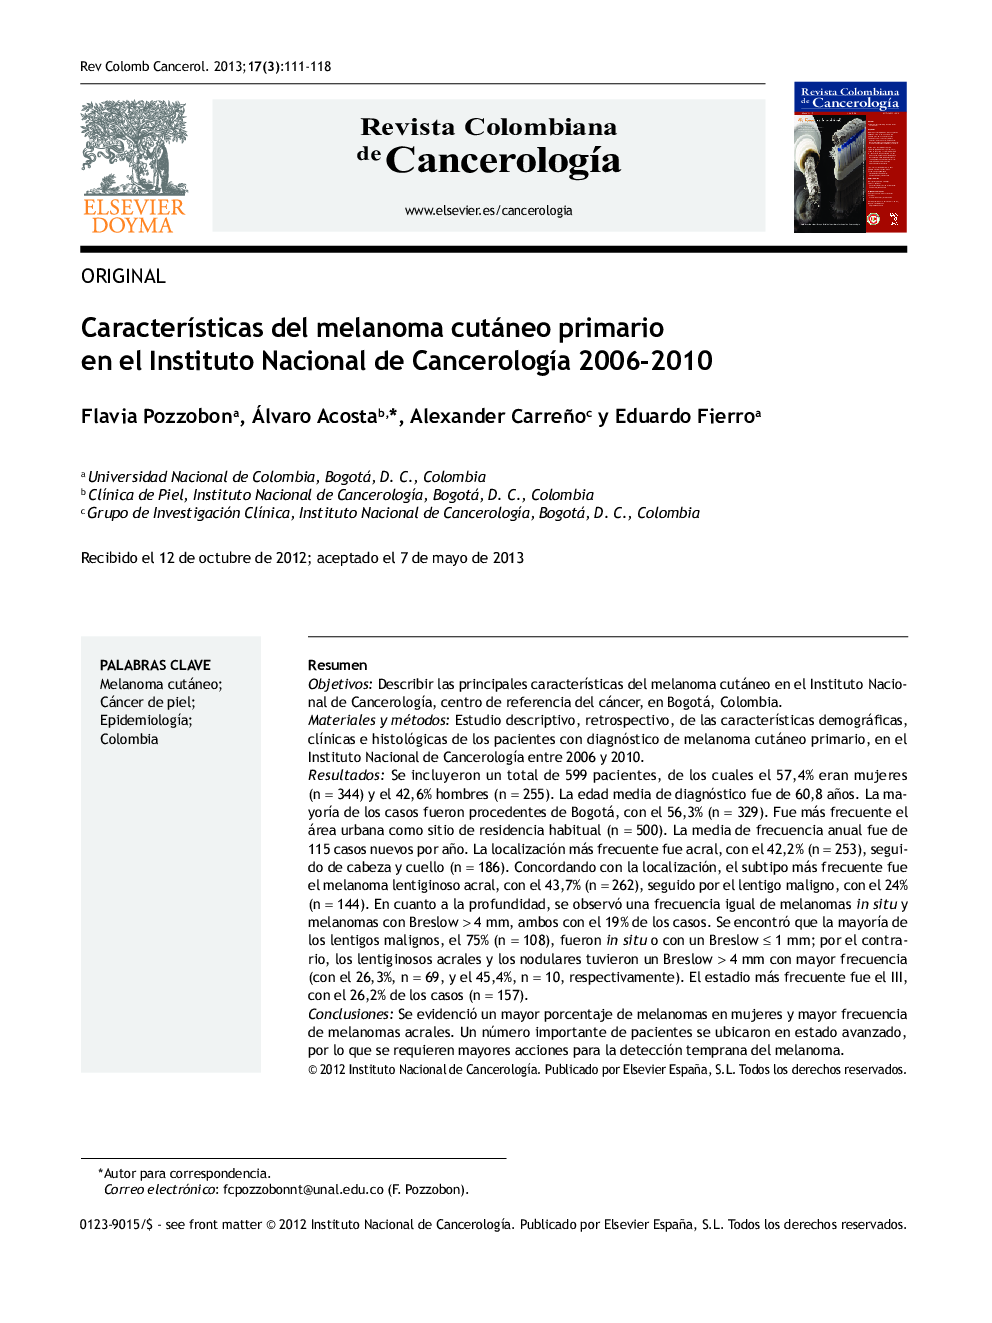 CaracterÃ­sticas del melanoma cutáneo primario en el Instituto Nacional de CancerologÃ­a 2006-2010